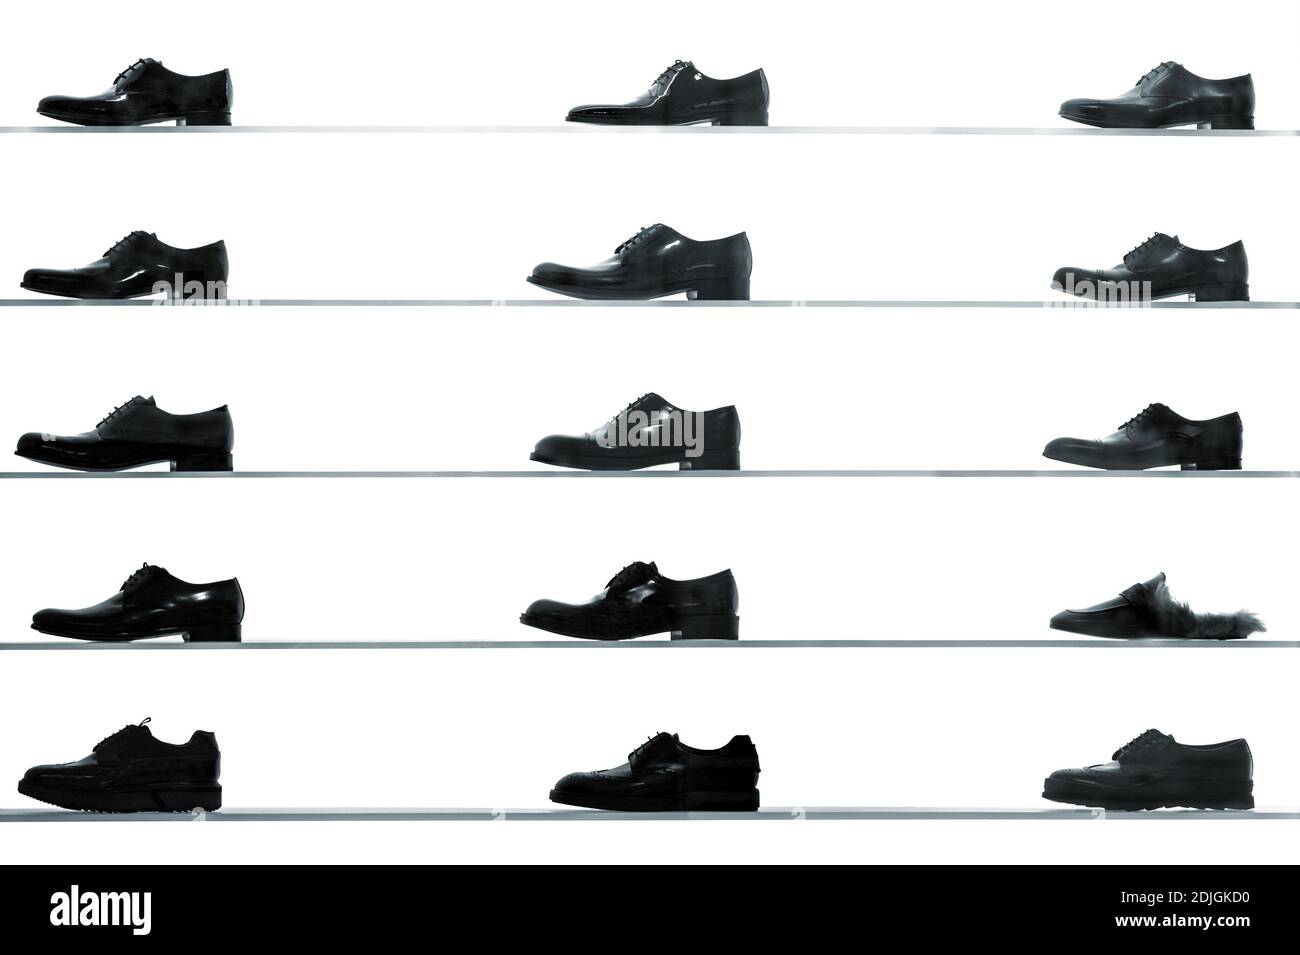 Gli uomini scarpe classic visualizzati sugli scaffali dei negozi contro back lit sfondo bianco. Alto contrasto bianco e nero abstract cercando foto Foto Stock